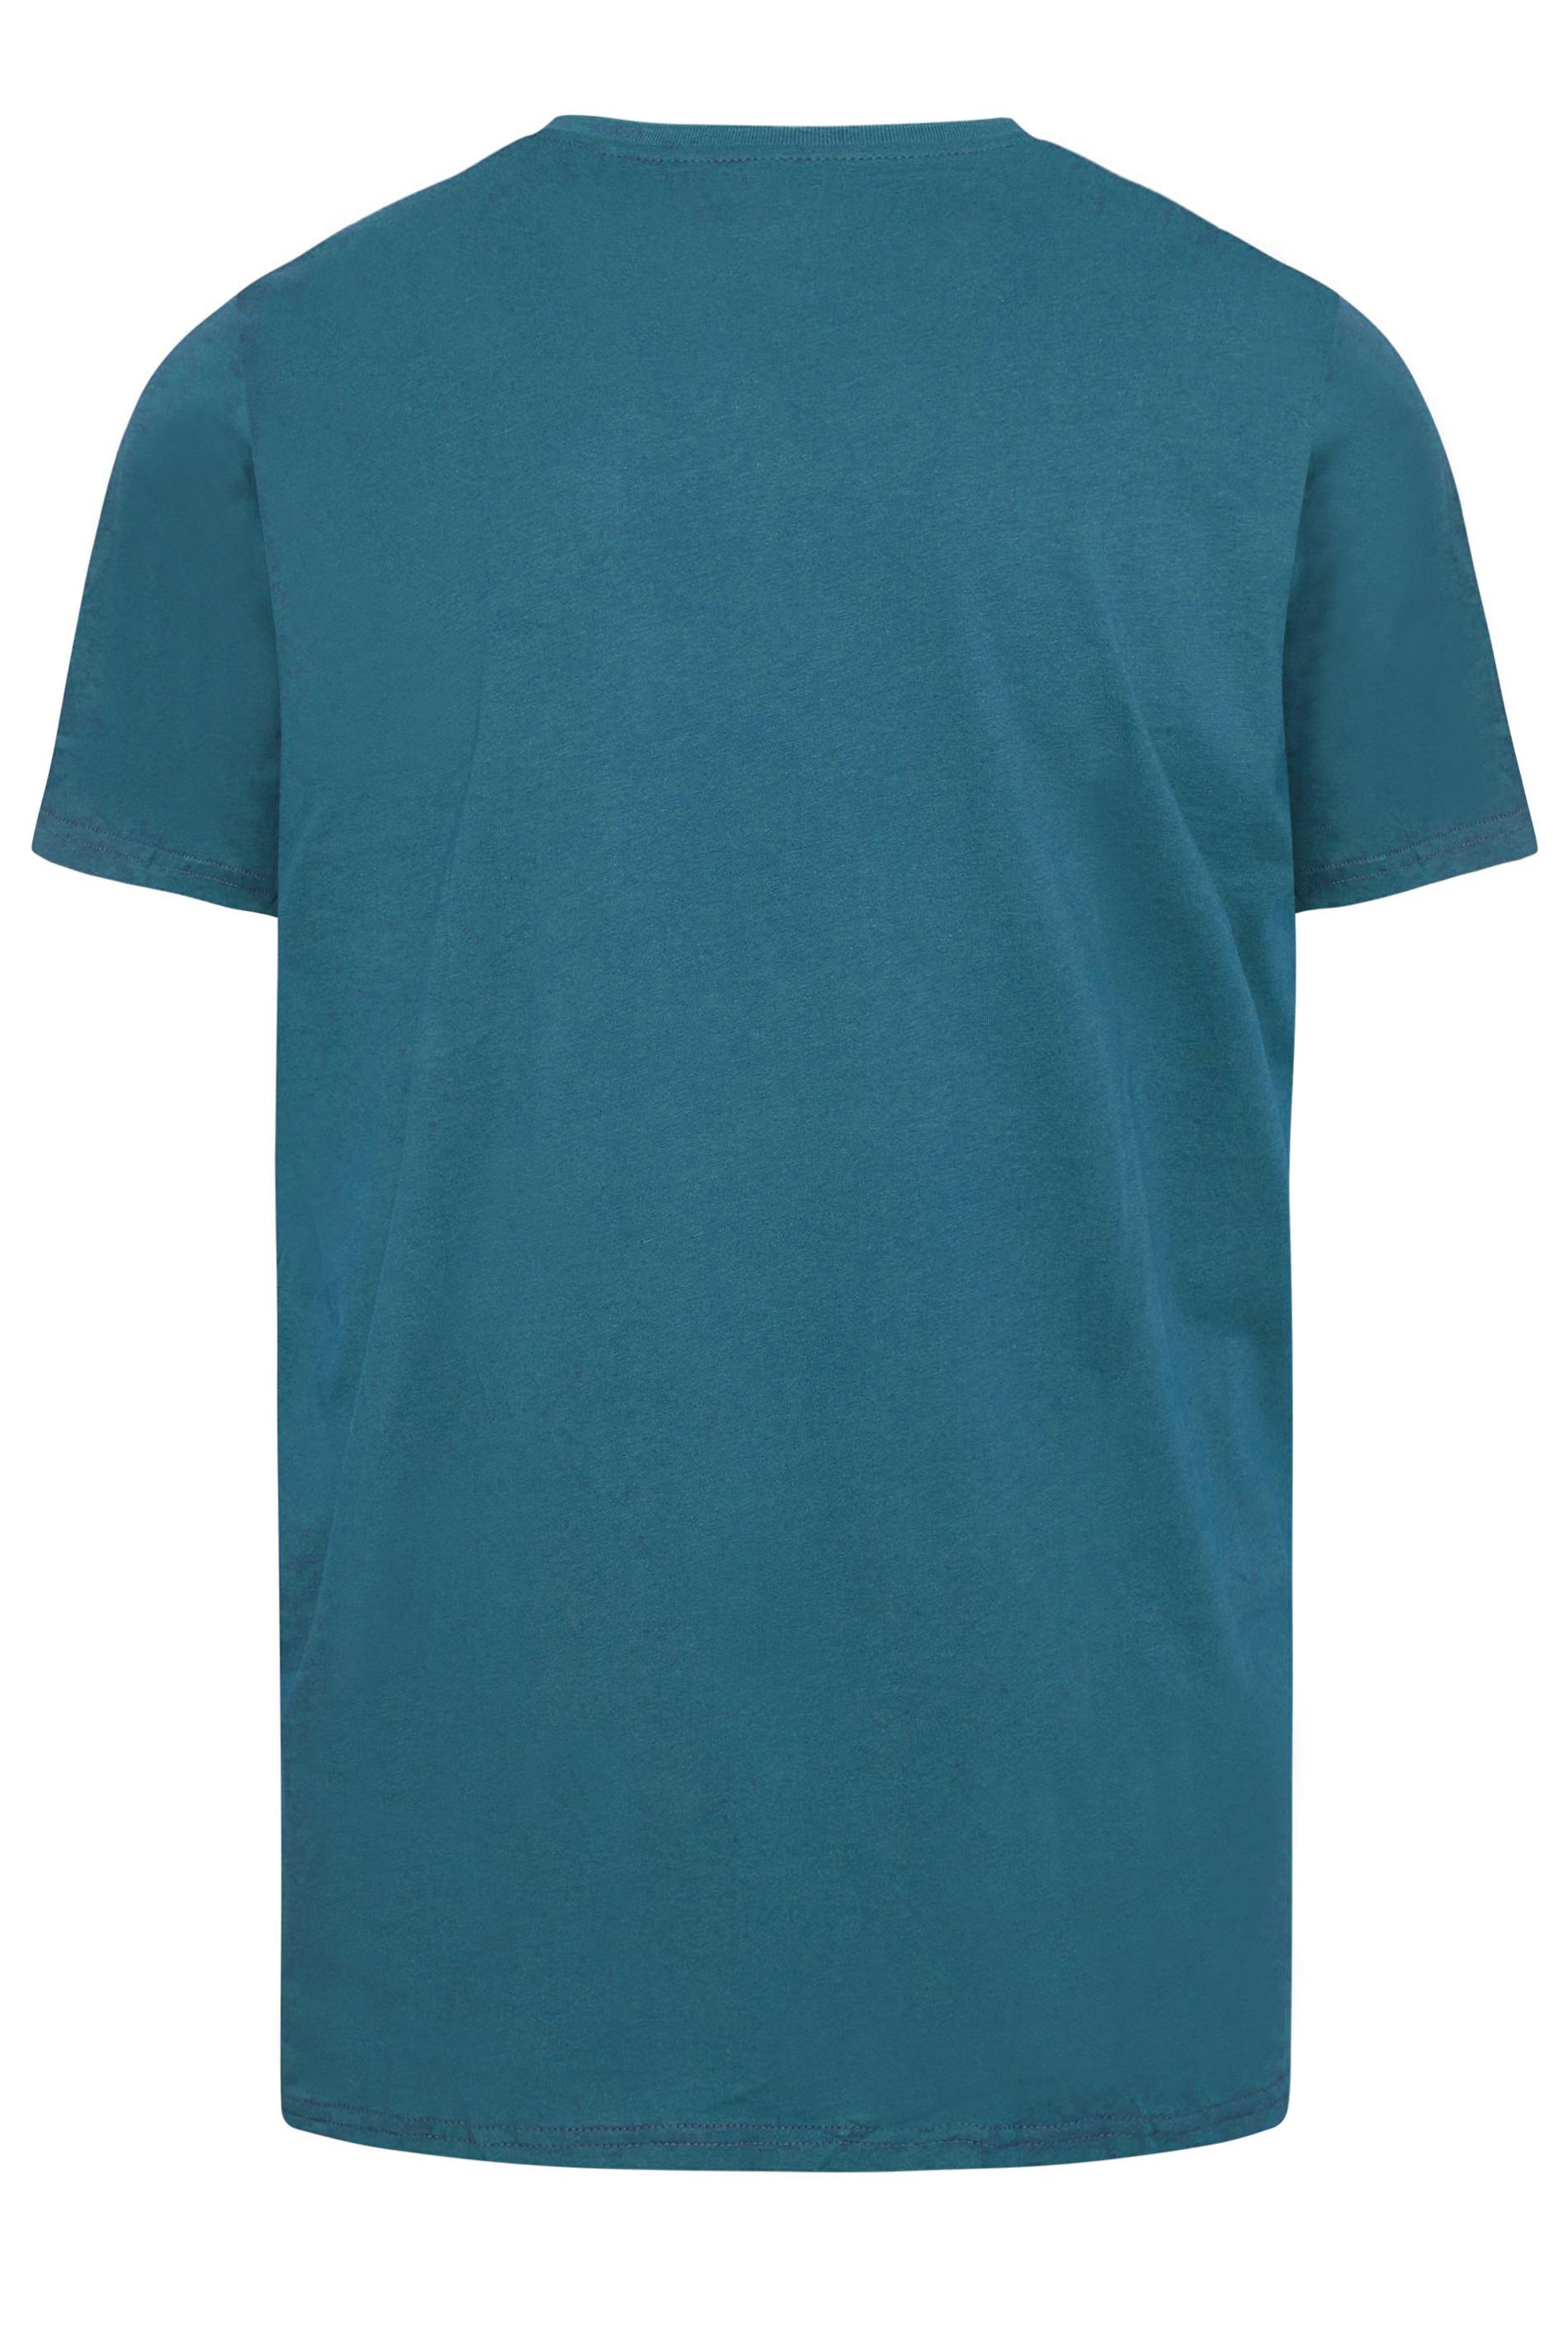 BadRhino Ocean Blue Core T-Shirt | BadRhino 3